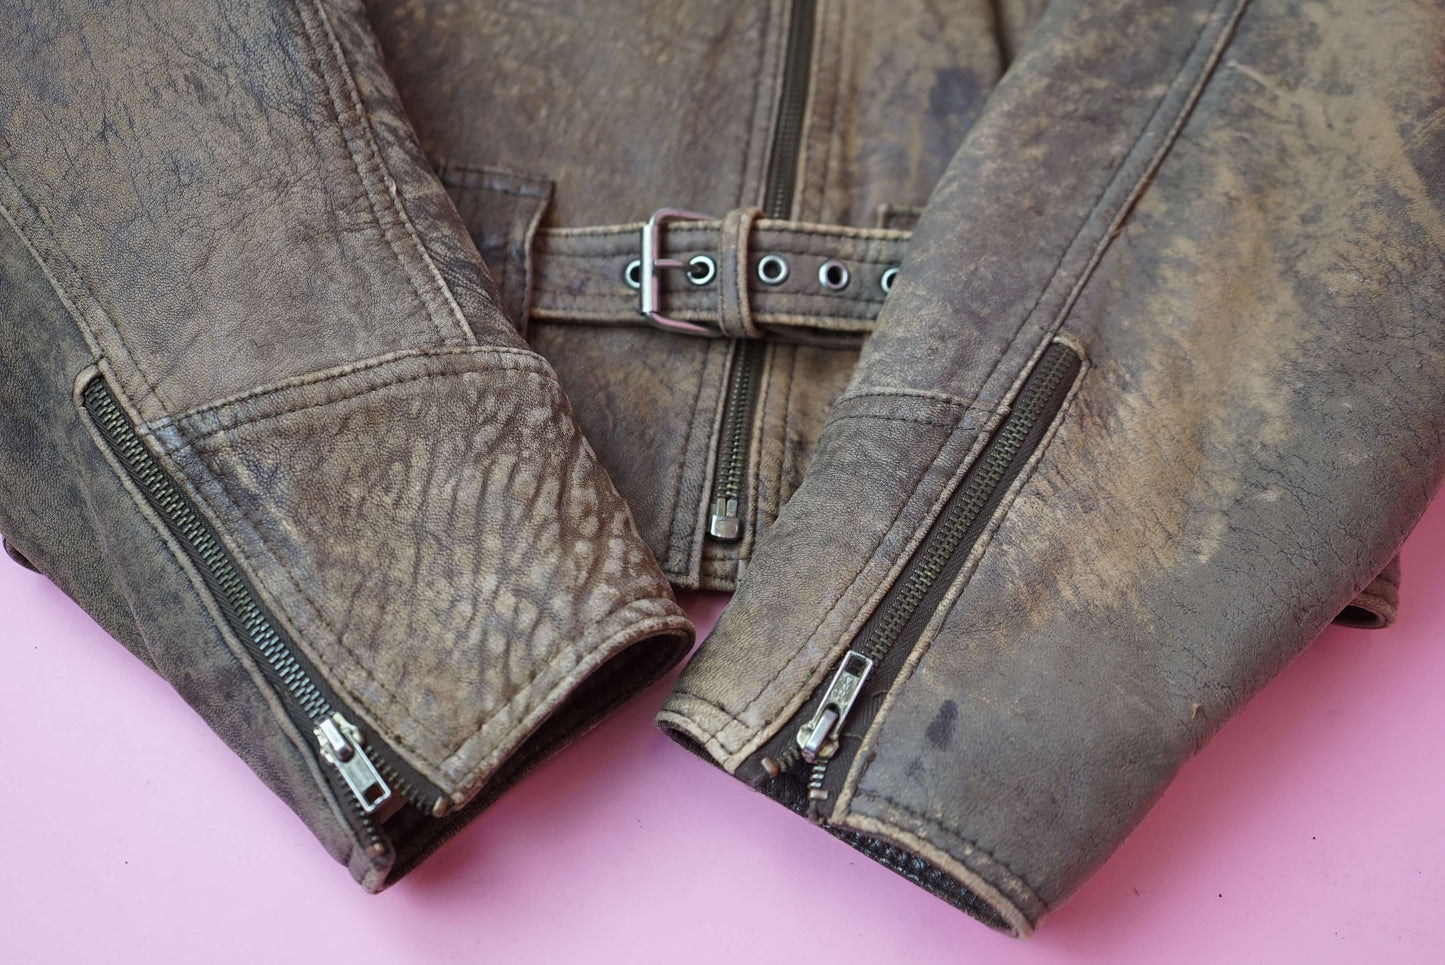 Brown Distressed Leather Jacket Vintage Biker Jacket 80s 90s Size M UK Size 10-12/ EU 40-42